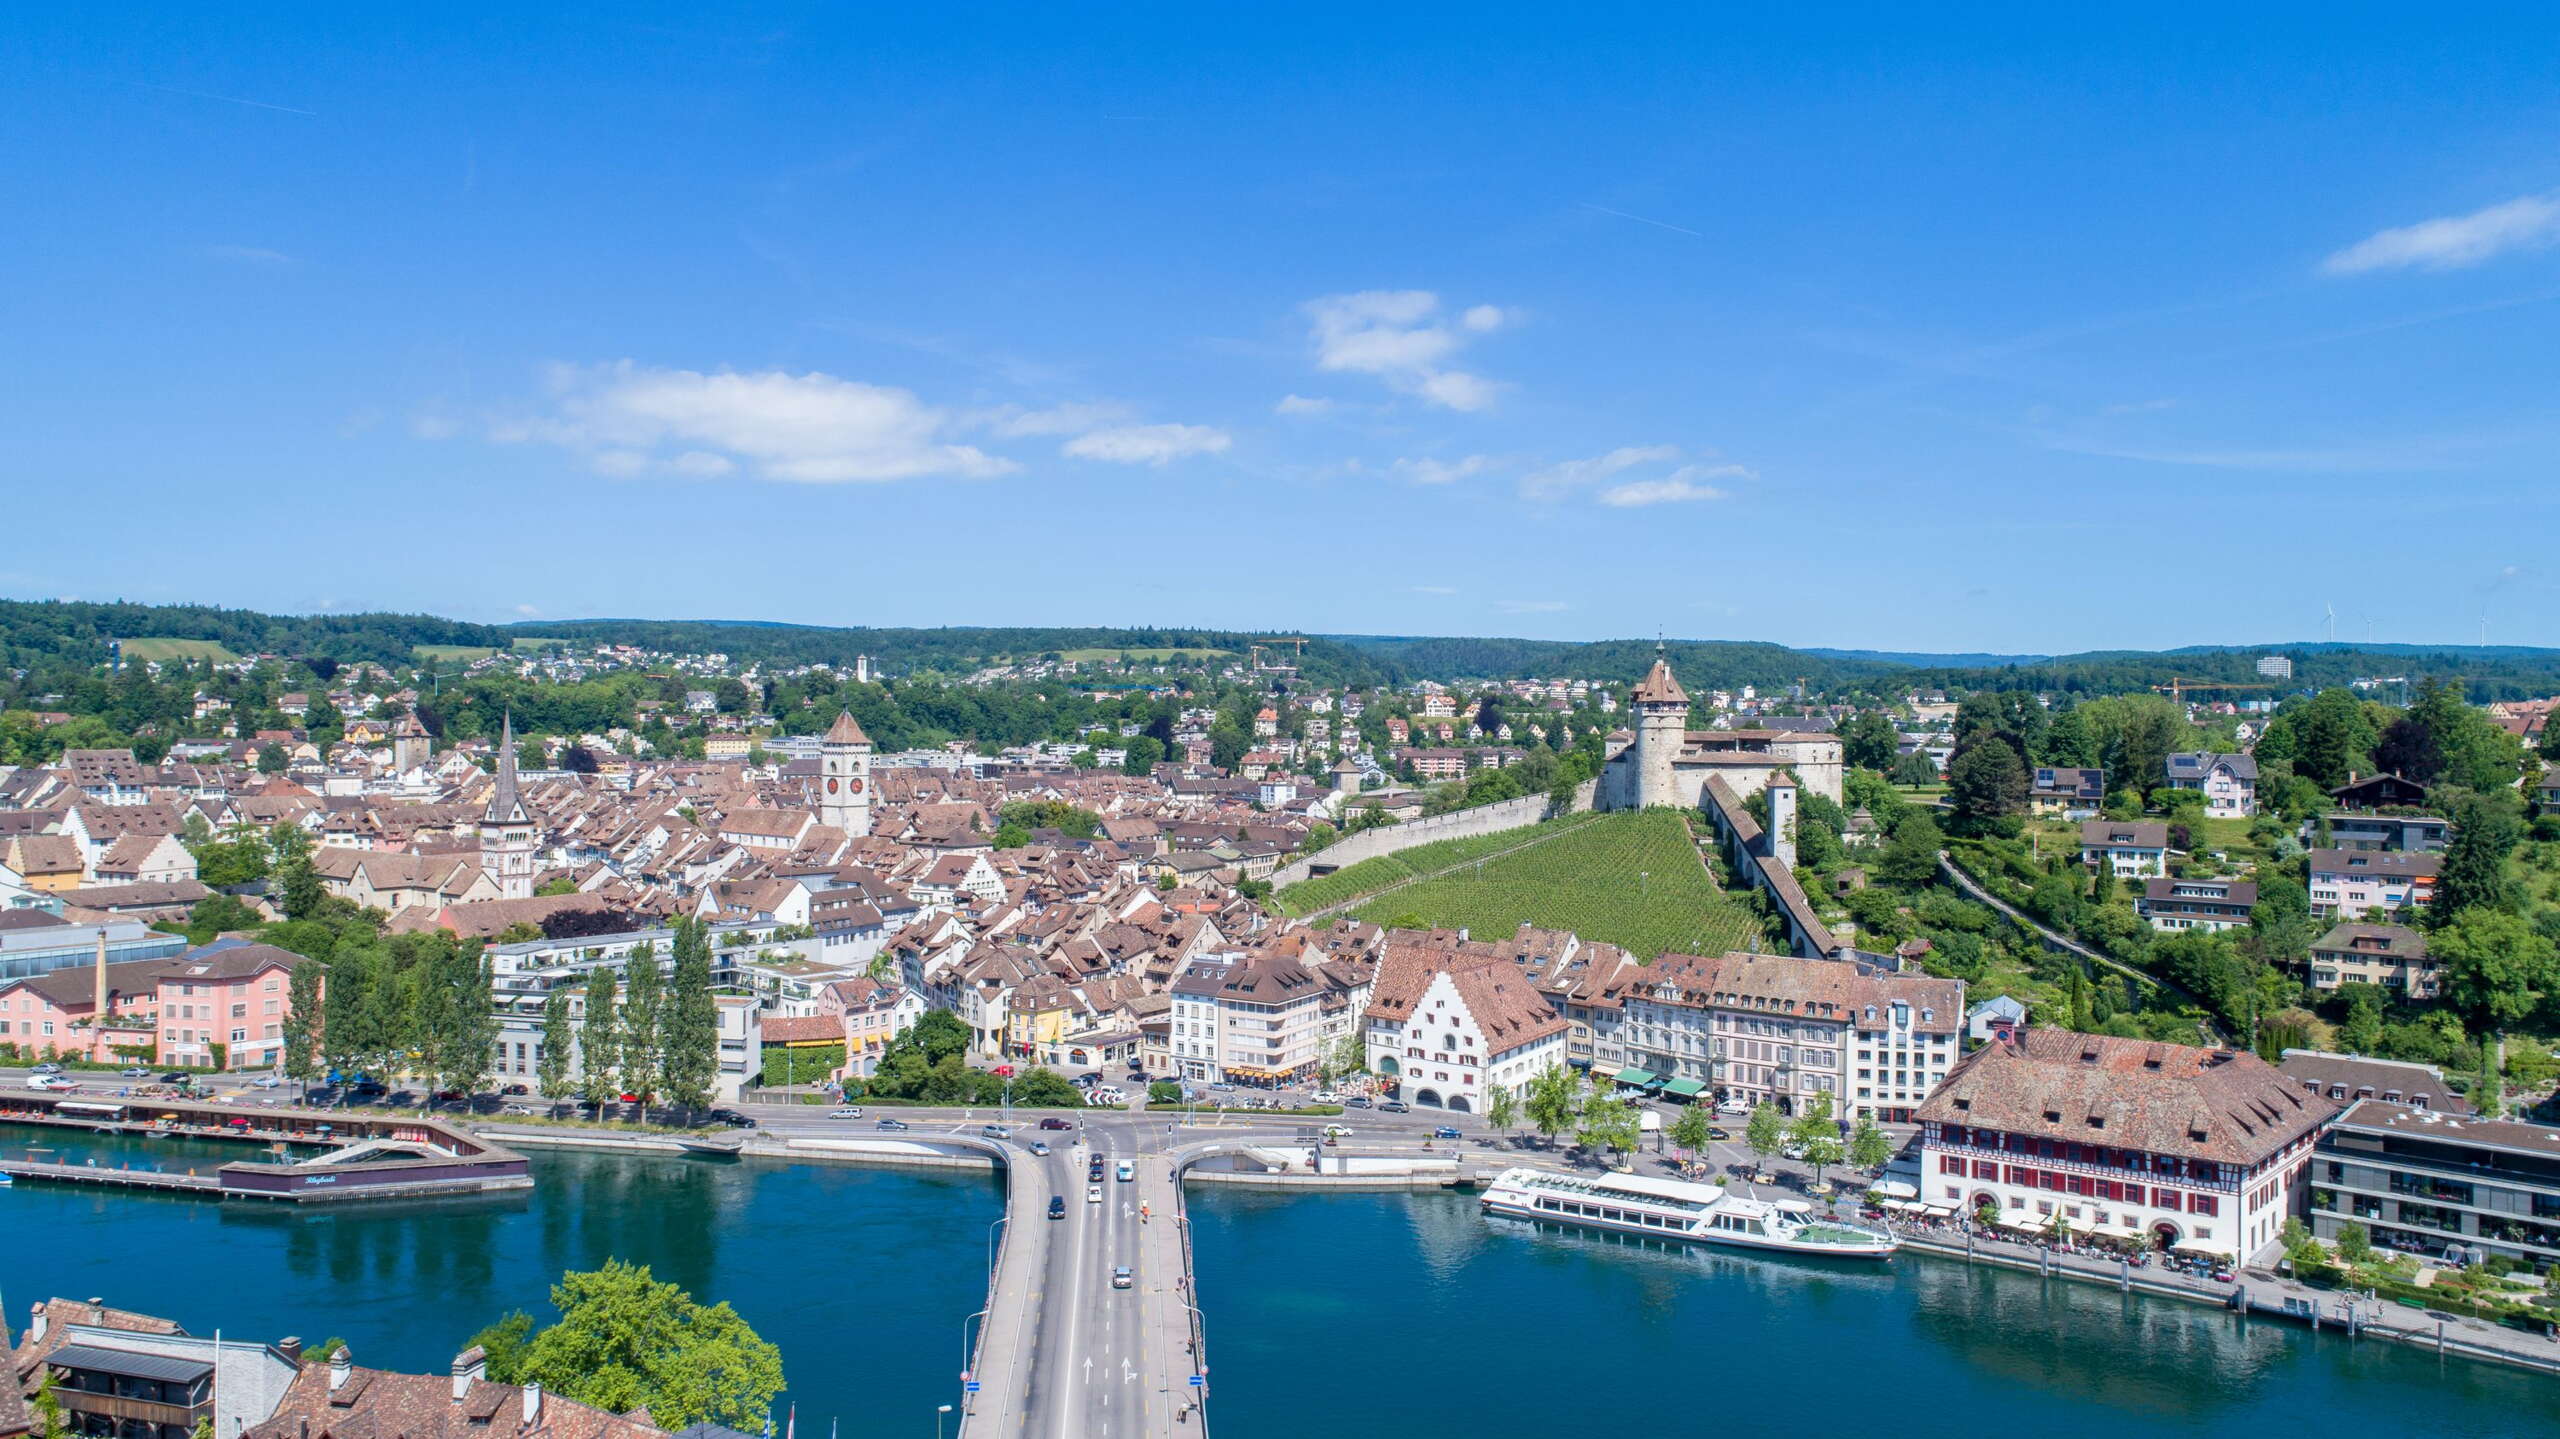 Blick von oben auf die Schaffhauser Altstadt mit dem Rhein im Vordergrund und dem Munot